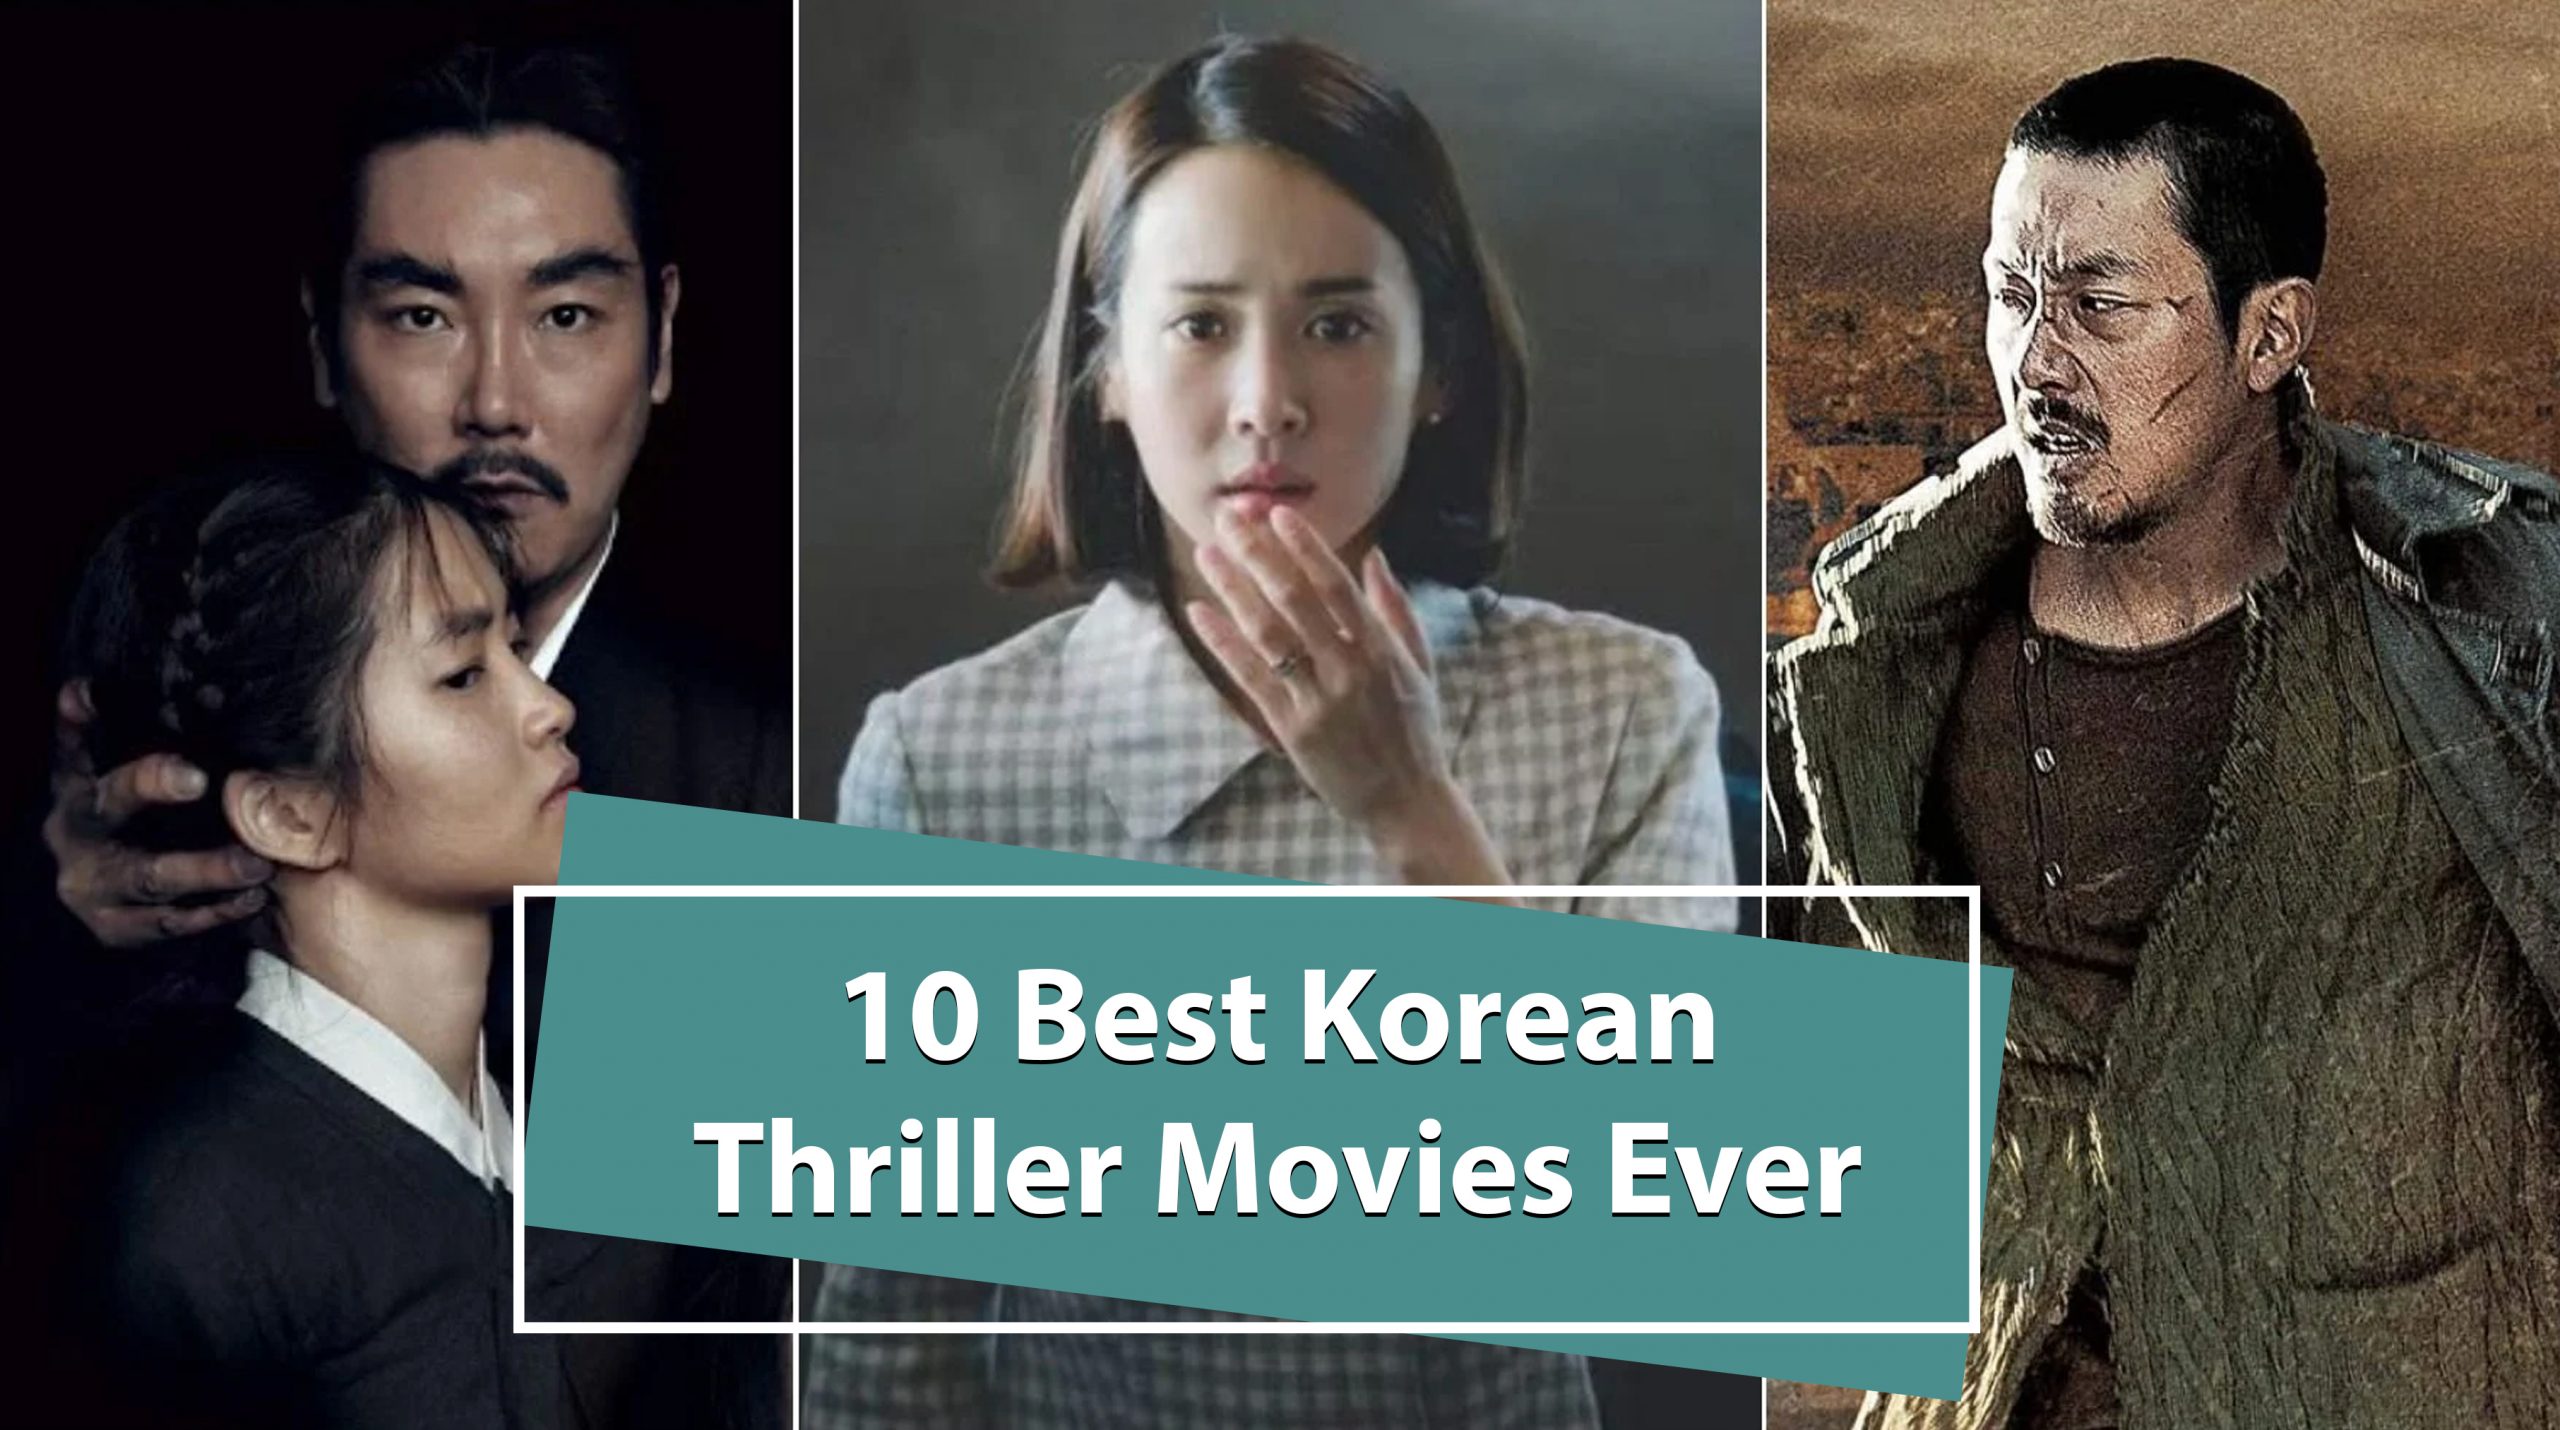 10 Best Korean Thriller Movies Ever